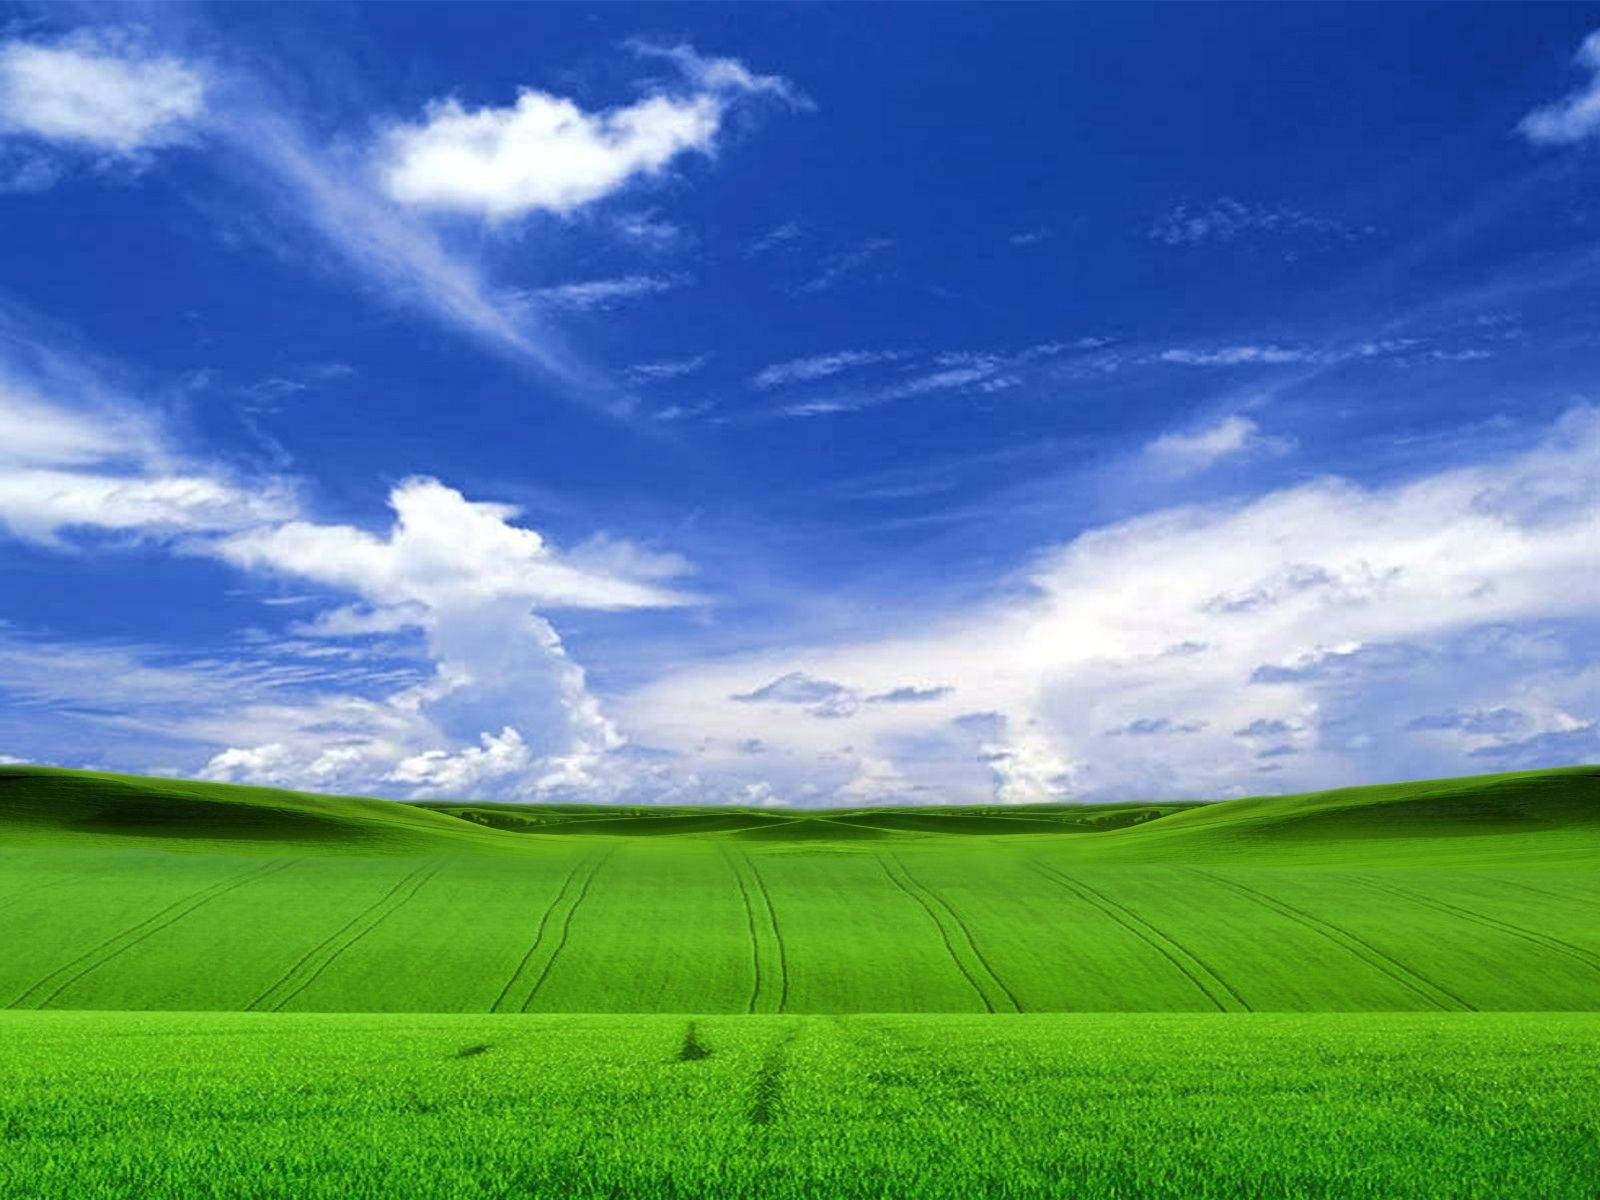 Windows Xp Bliss Field Wallpaper